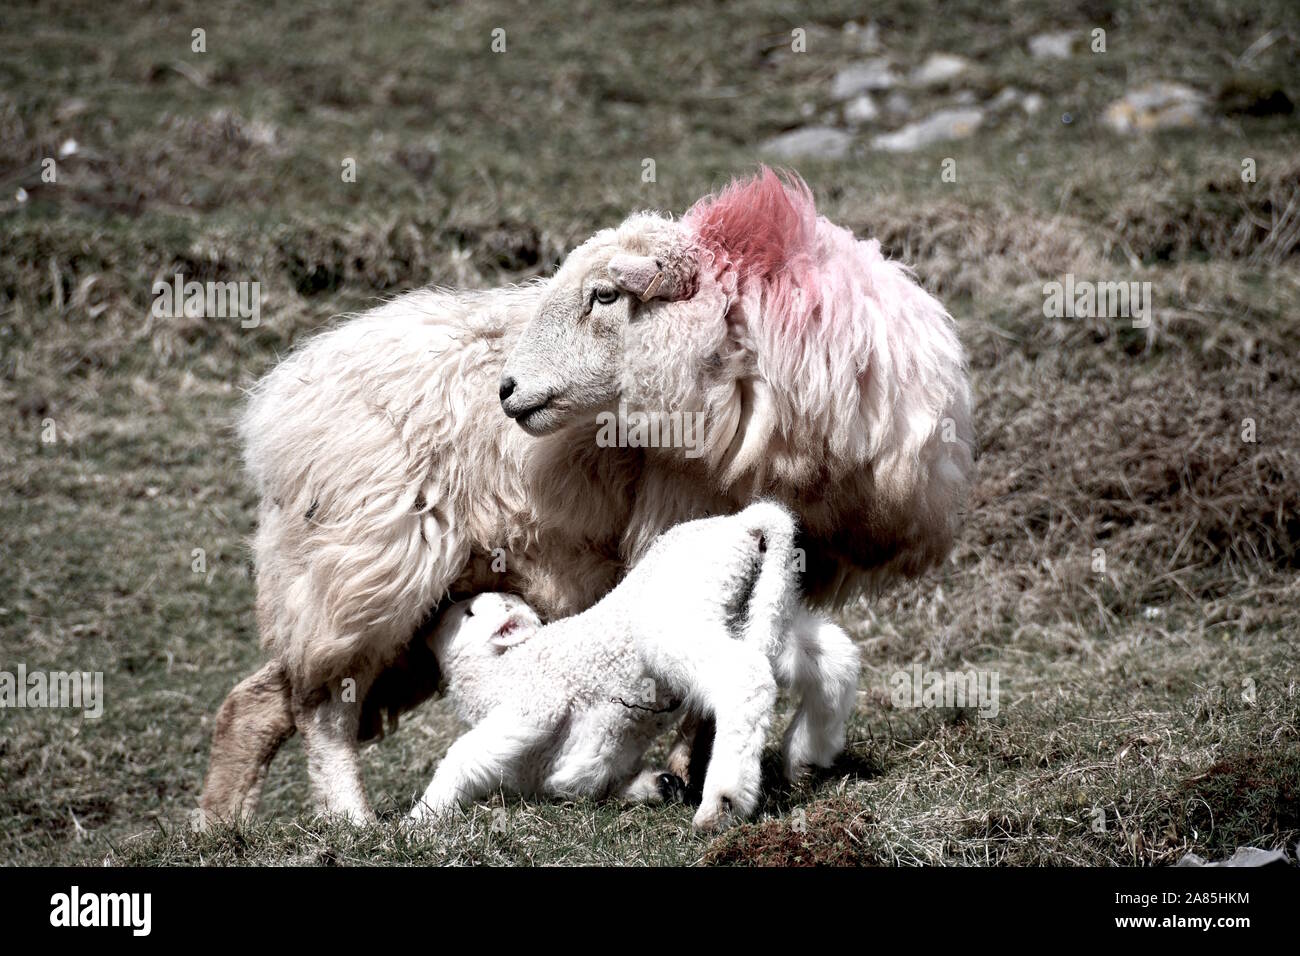 Sheep and lamb Wales Stock Photo